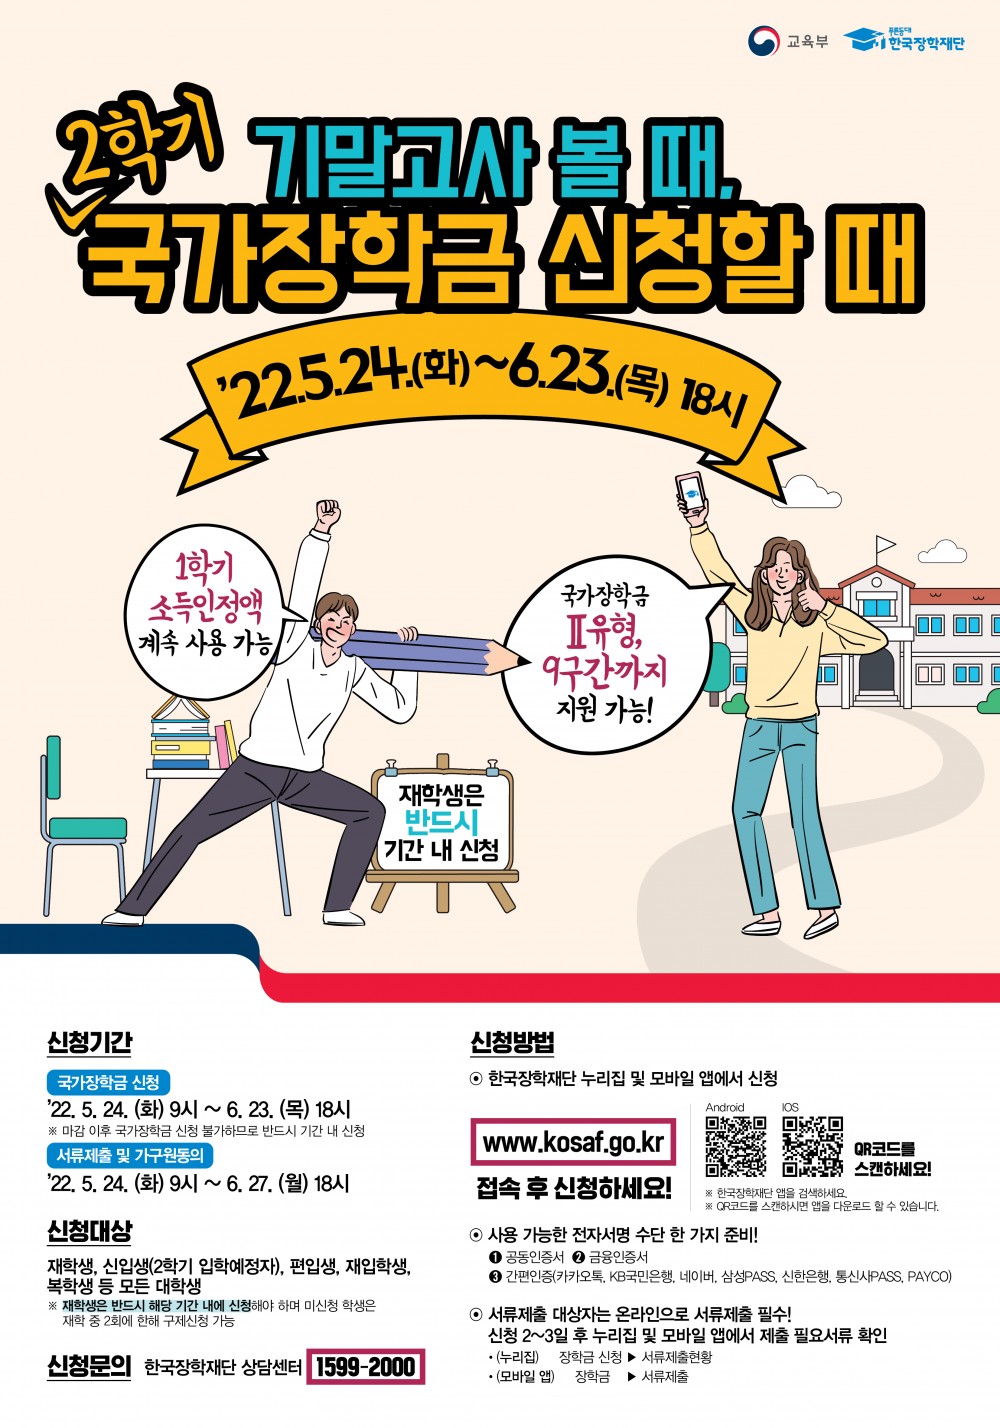 22학년도 2학기 국가장학금 신청 포스터(22.05.23)